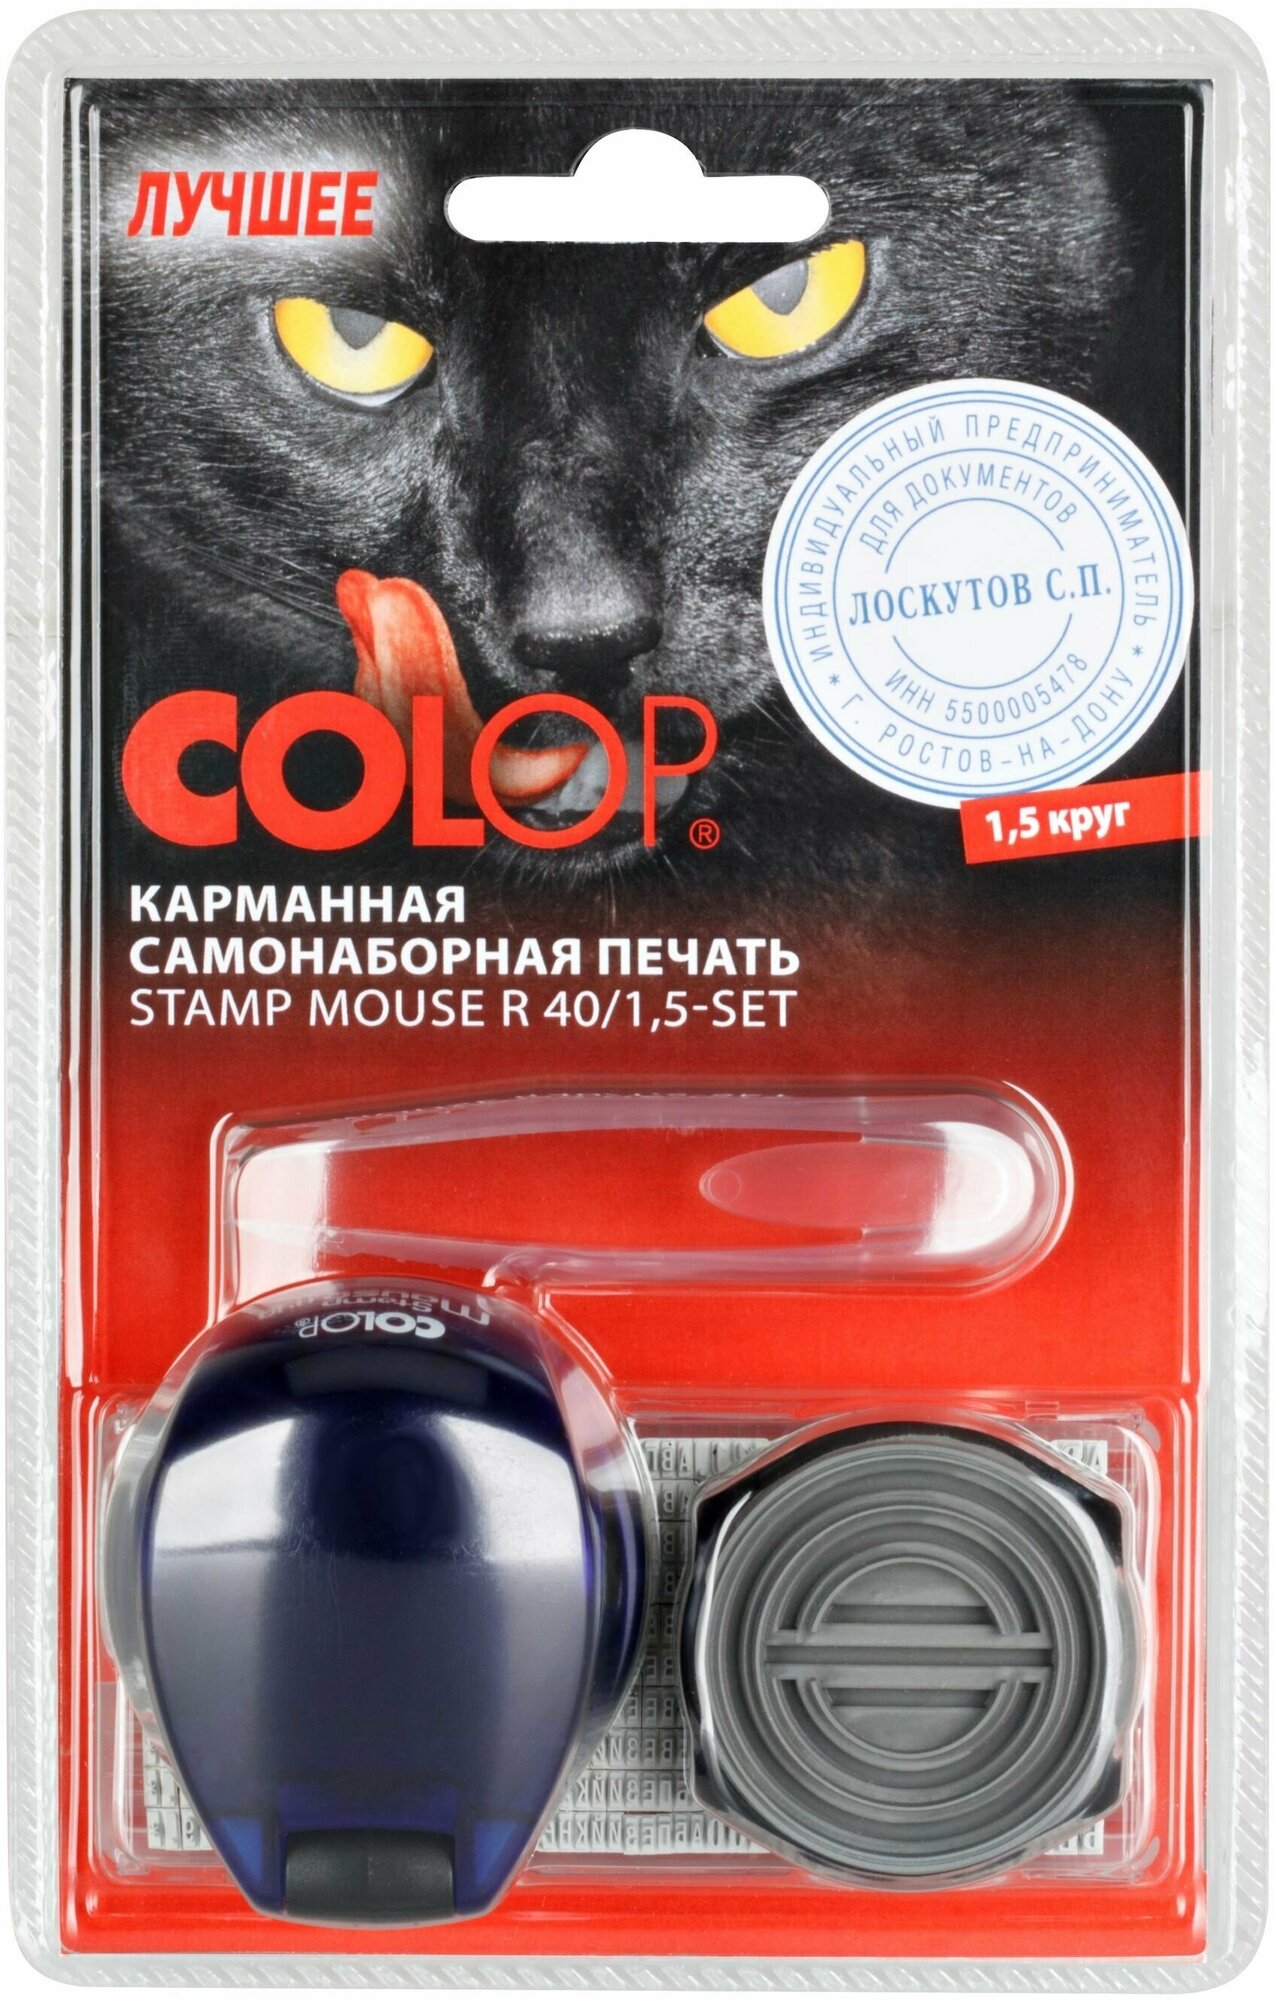 Печать самонаборная Colop Stamp Mouse R40/15 SET пластик корпсиний 15кр оттиссиний шир40мм выс40мм